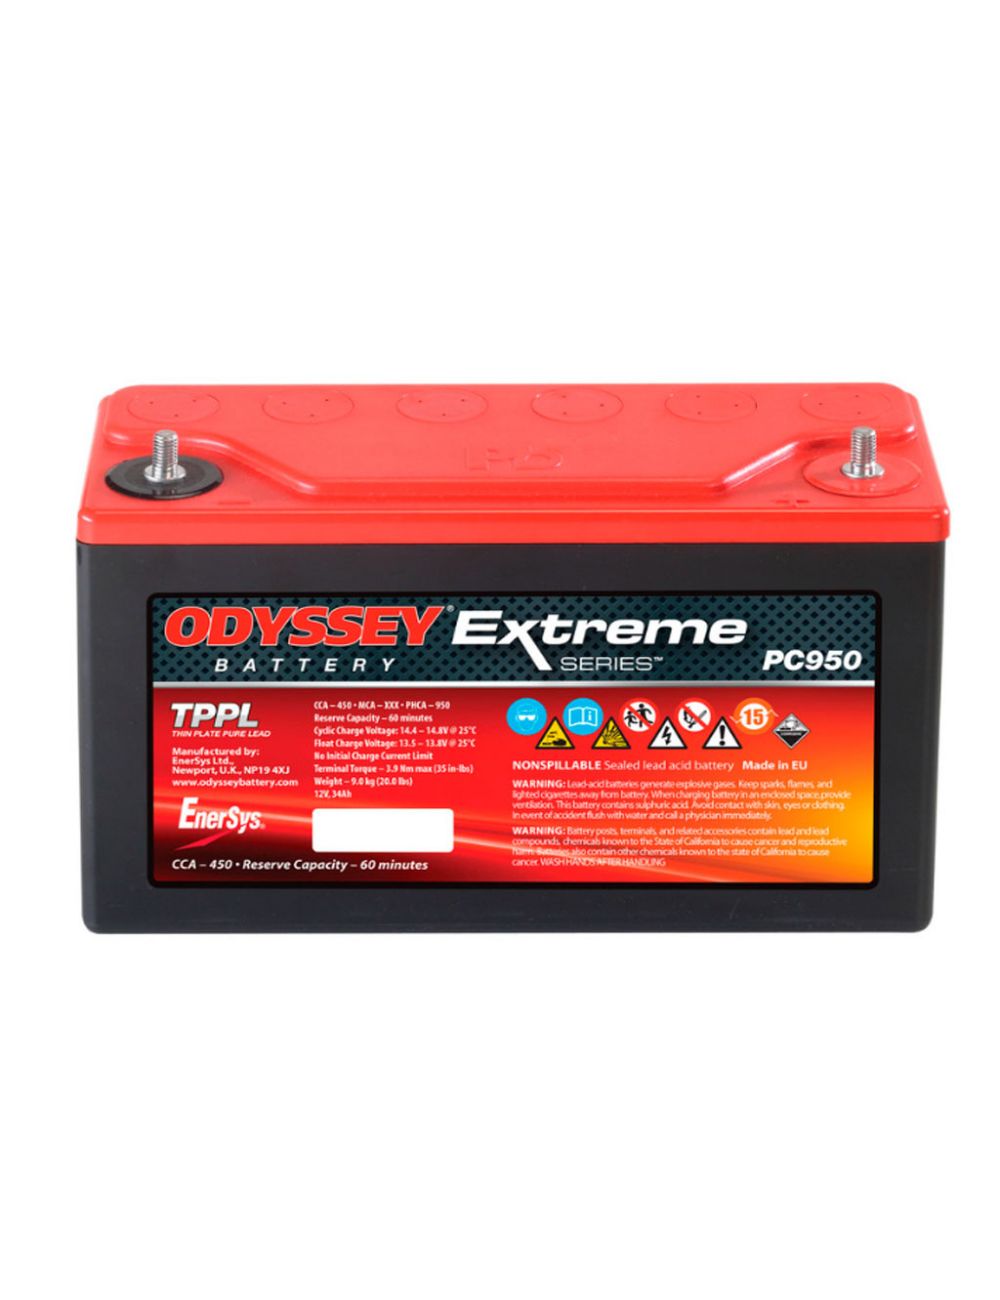 PC950 batería 12V 34Ah ODYSSEY serie Extreme - PC950 -  - 0635241138900 - 1